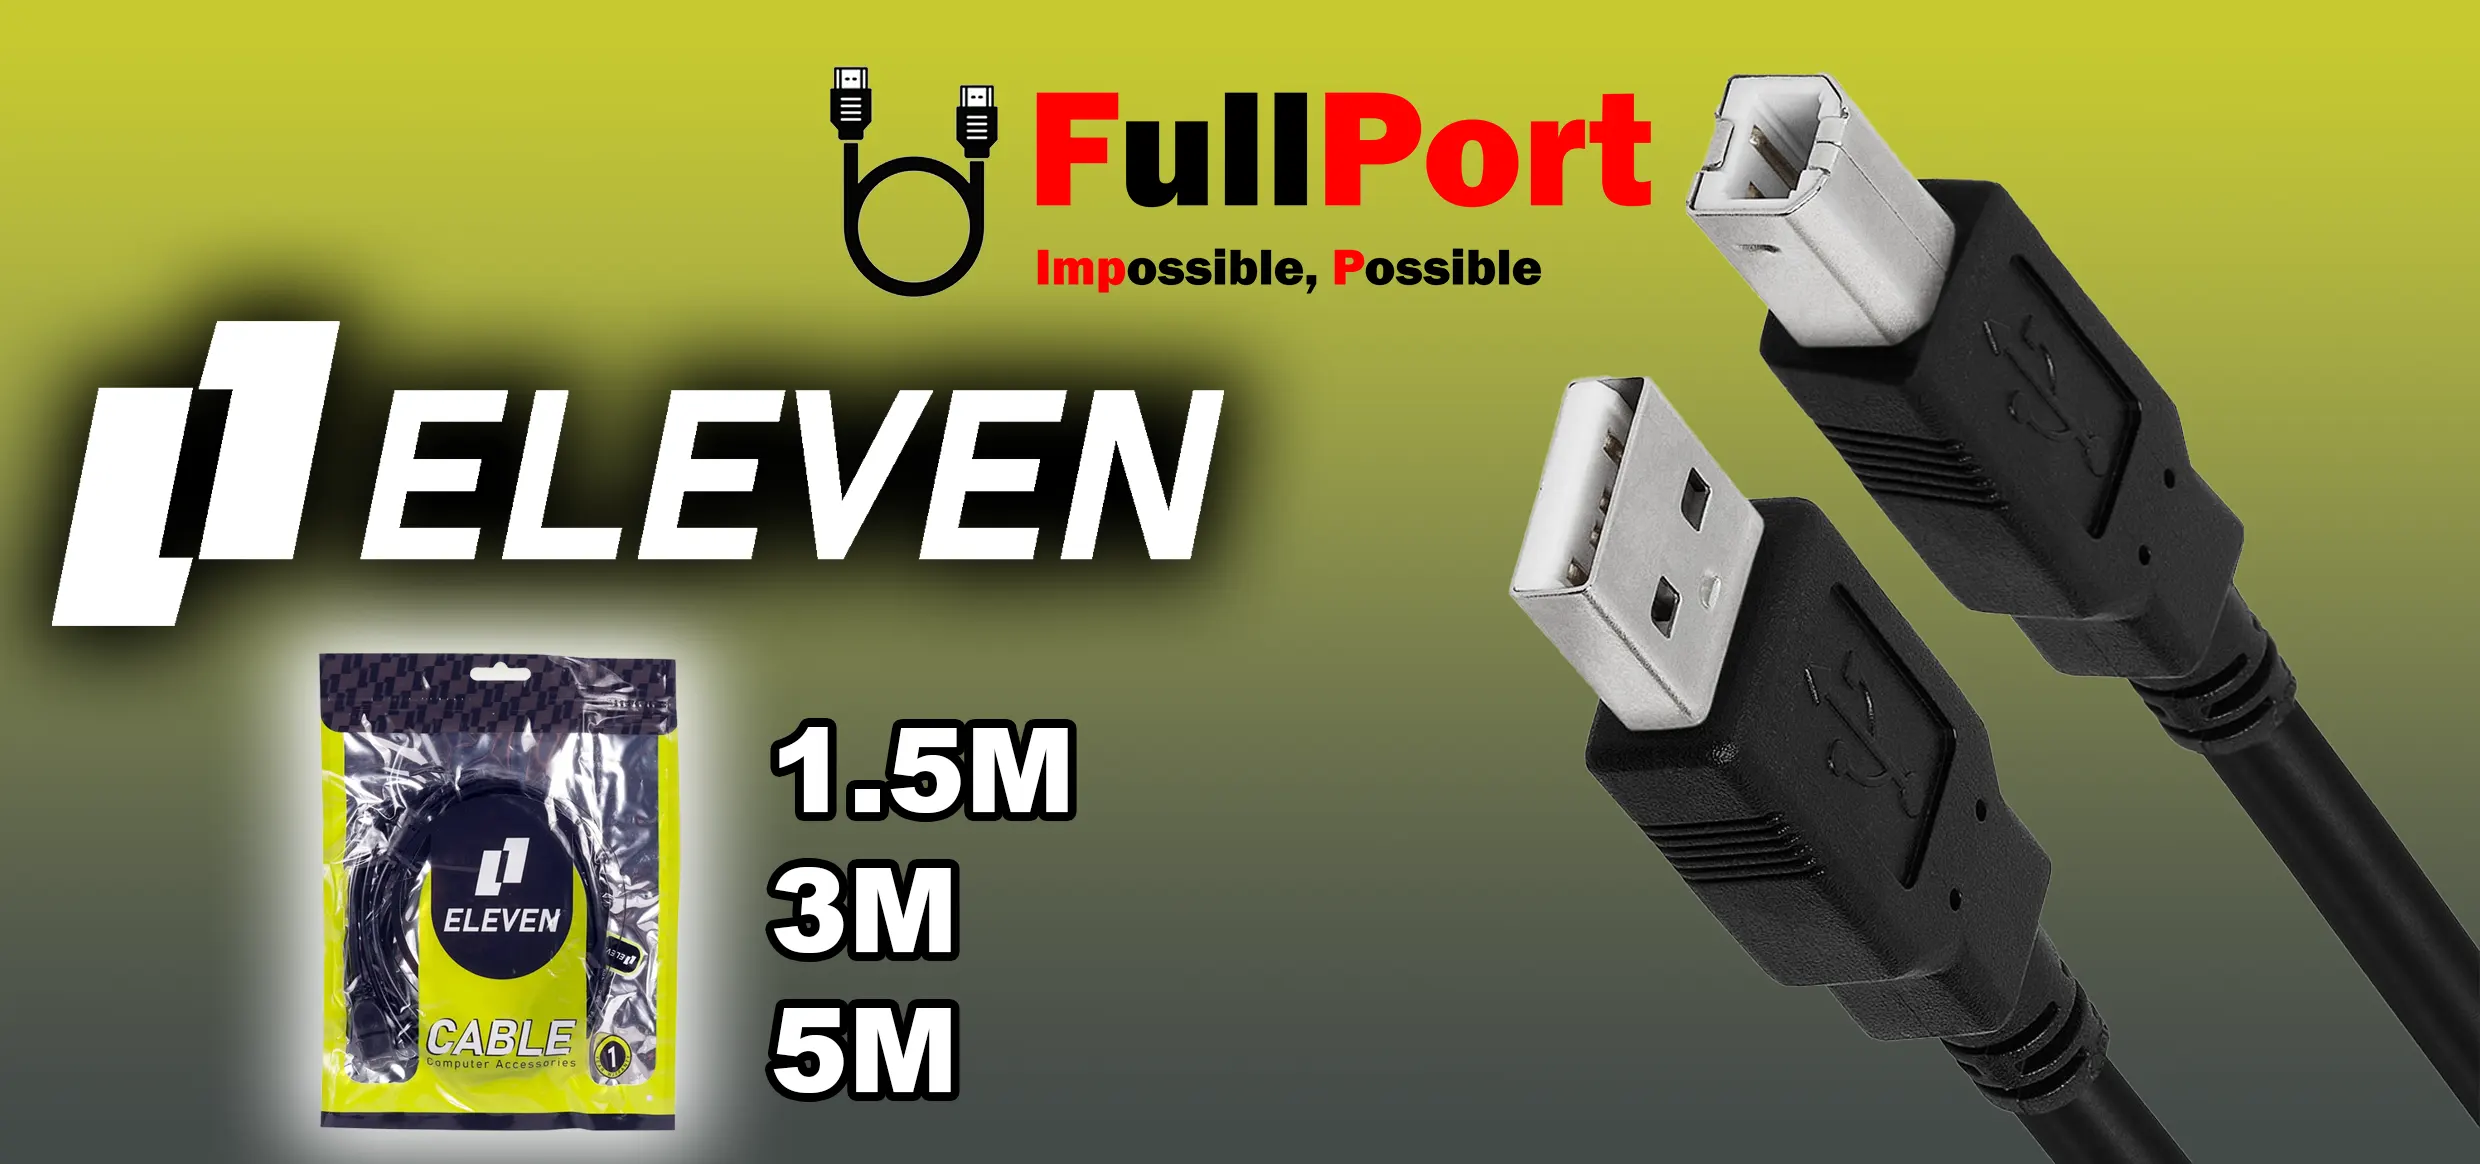 مشاهده و خرید آنلاین کابل پرینتر USB برند ایلون | ELEVEN در متراژهای مختلف و کیفیت های گوناگون از فروشگاه اینترنتی فول پورت